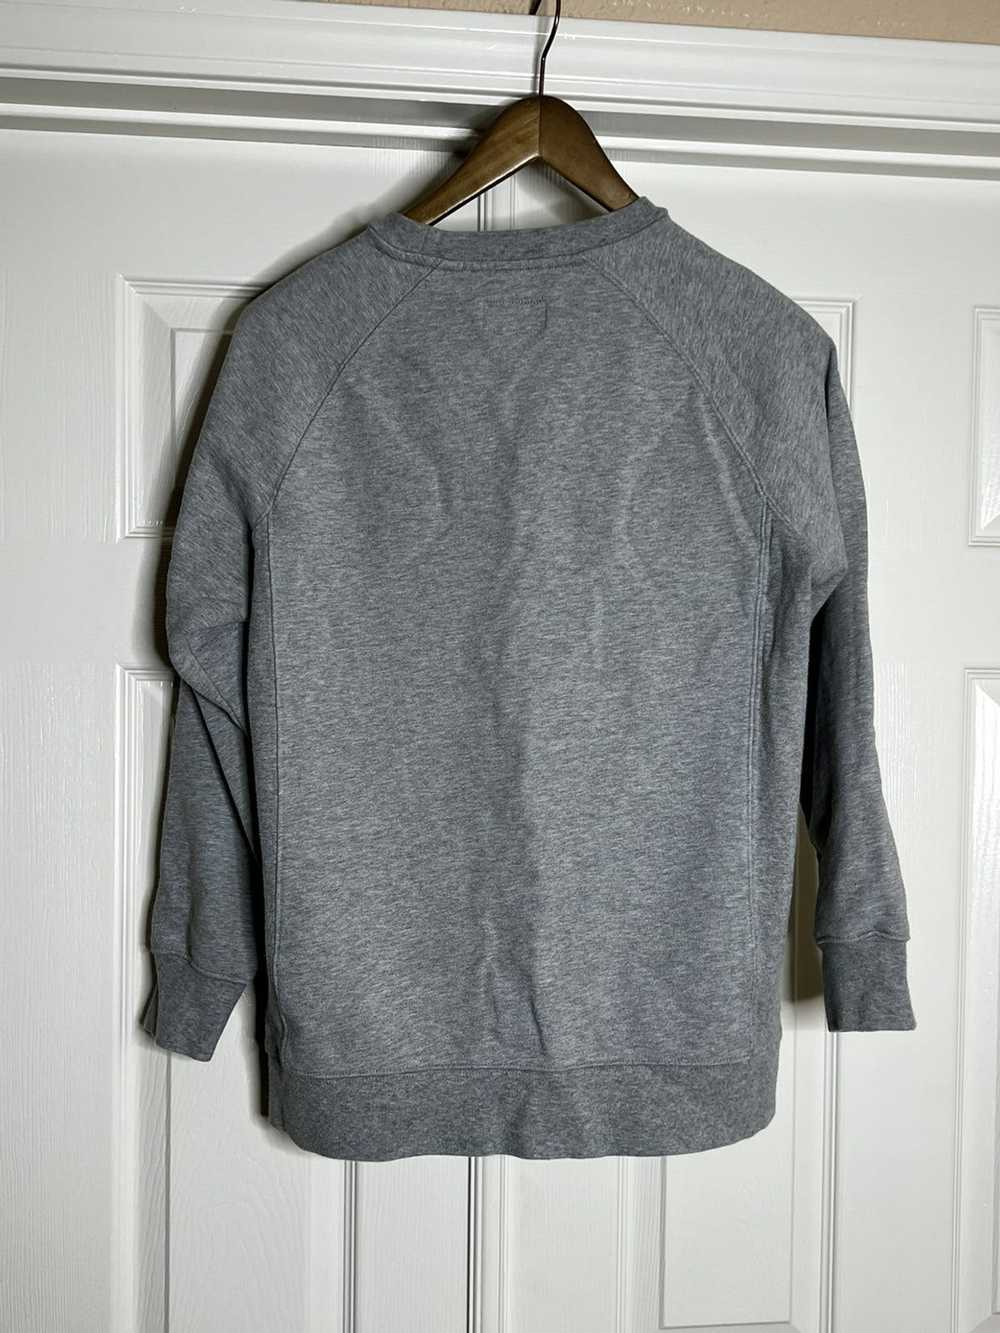 Kith Kith grey sweatshirt in Sz Small - image 2